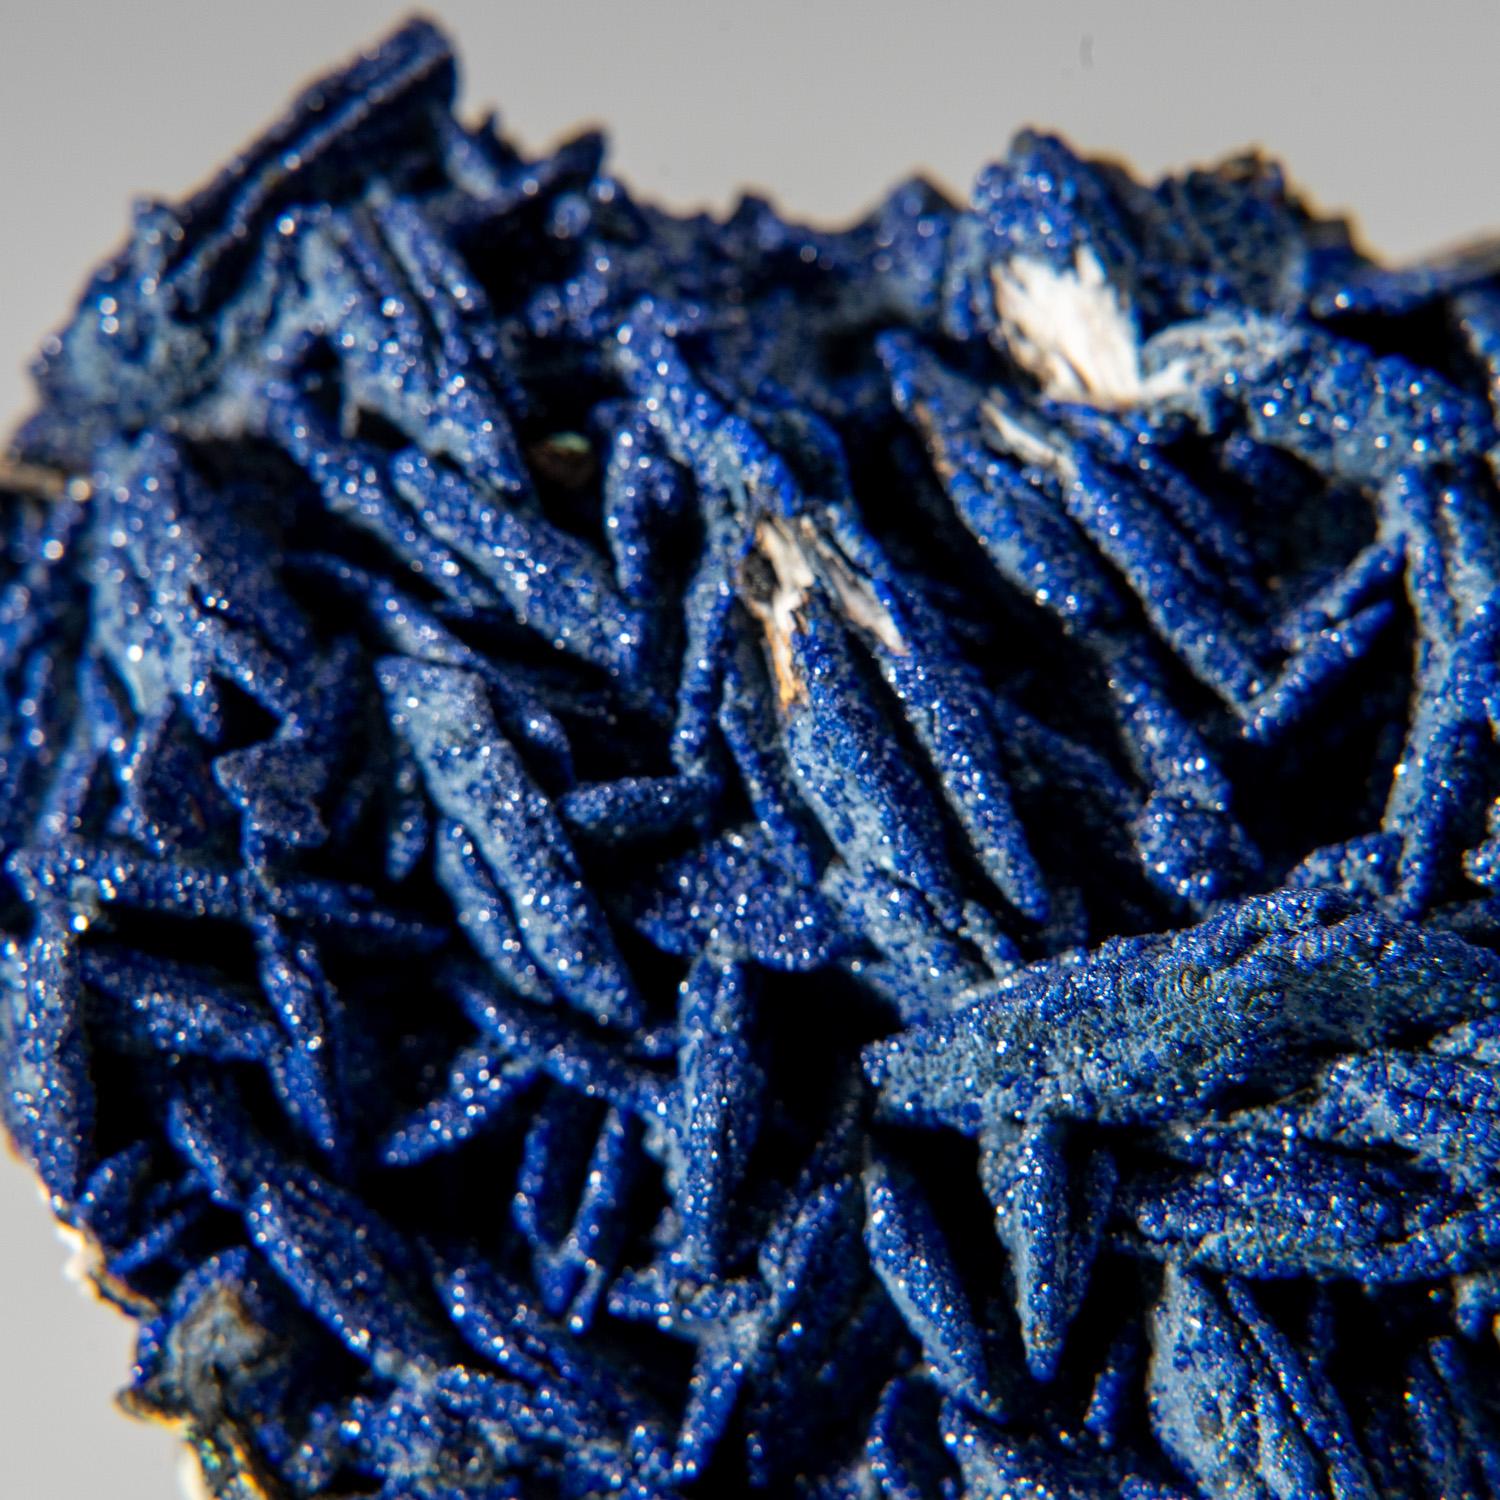 Aus den Minen von Ahouli, Aouli, 7 km nordöstlich von Mibladen, Gürtel Zeida-Aouli-Mibladen, Provinz Midelt, Marokko

Reichhaltige Stufe mit hellblau schimmernden Azuritkristallen auf pudrig grünen Malachit-Mikrokristallen. Der Azurit ist im Inneren